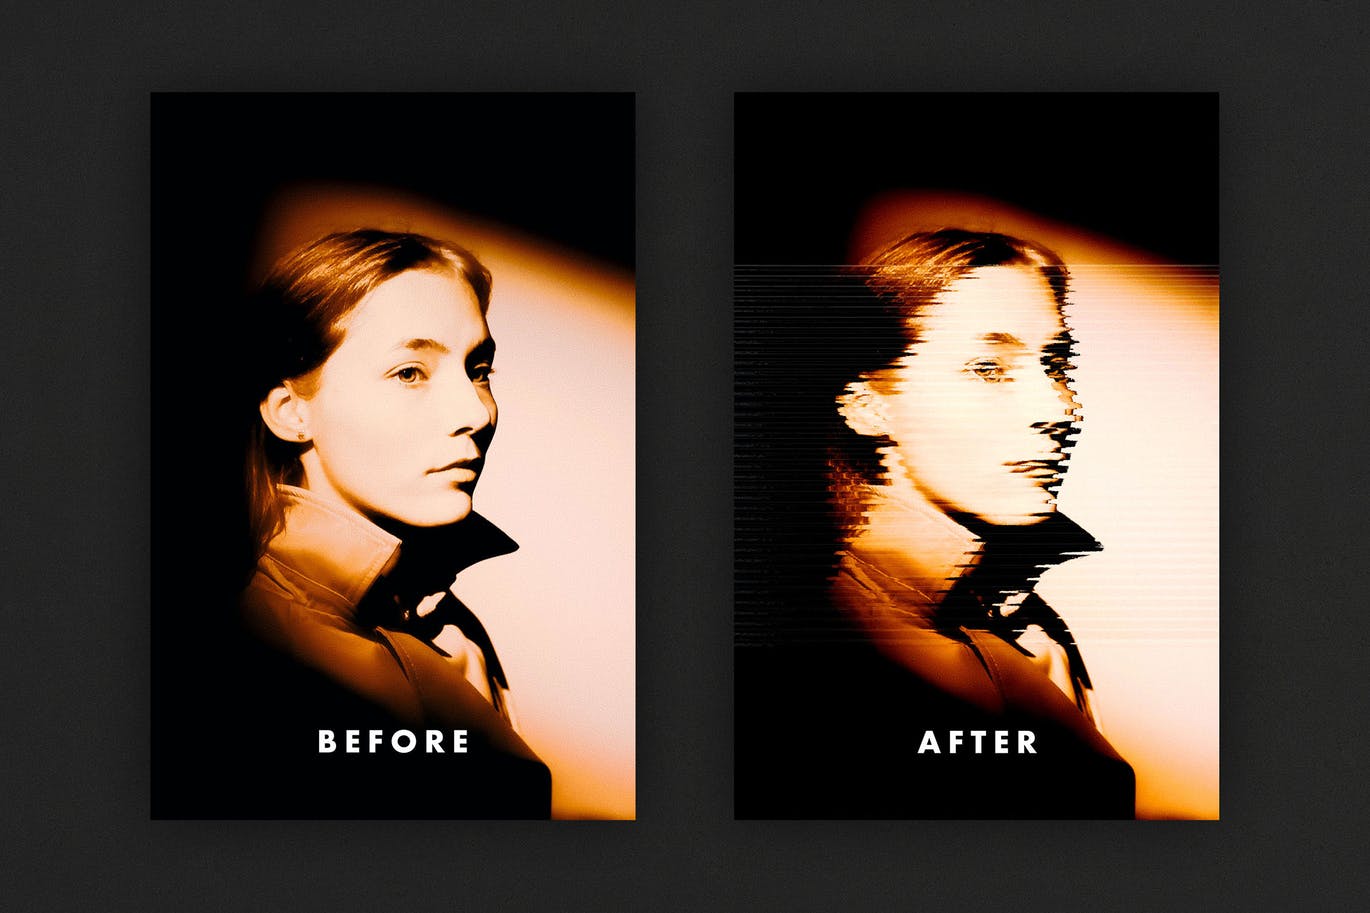 线条磨砂玻璃效果海报模板 Frosted Glass Effect for Posters 插件预设 第4张